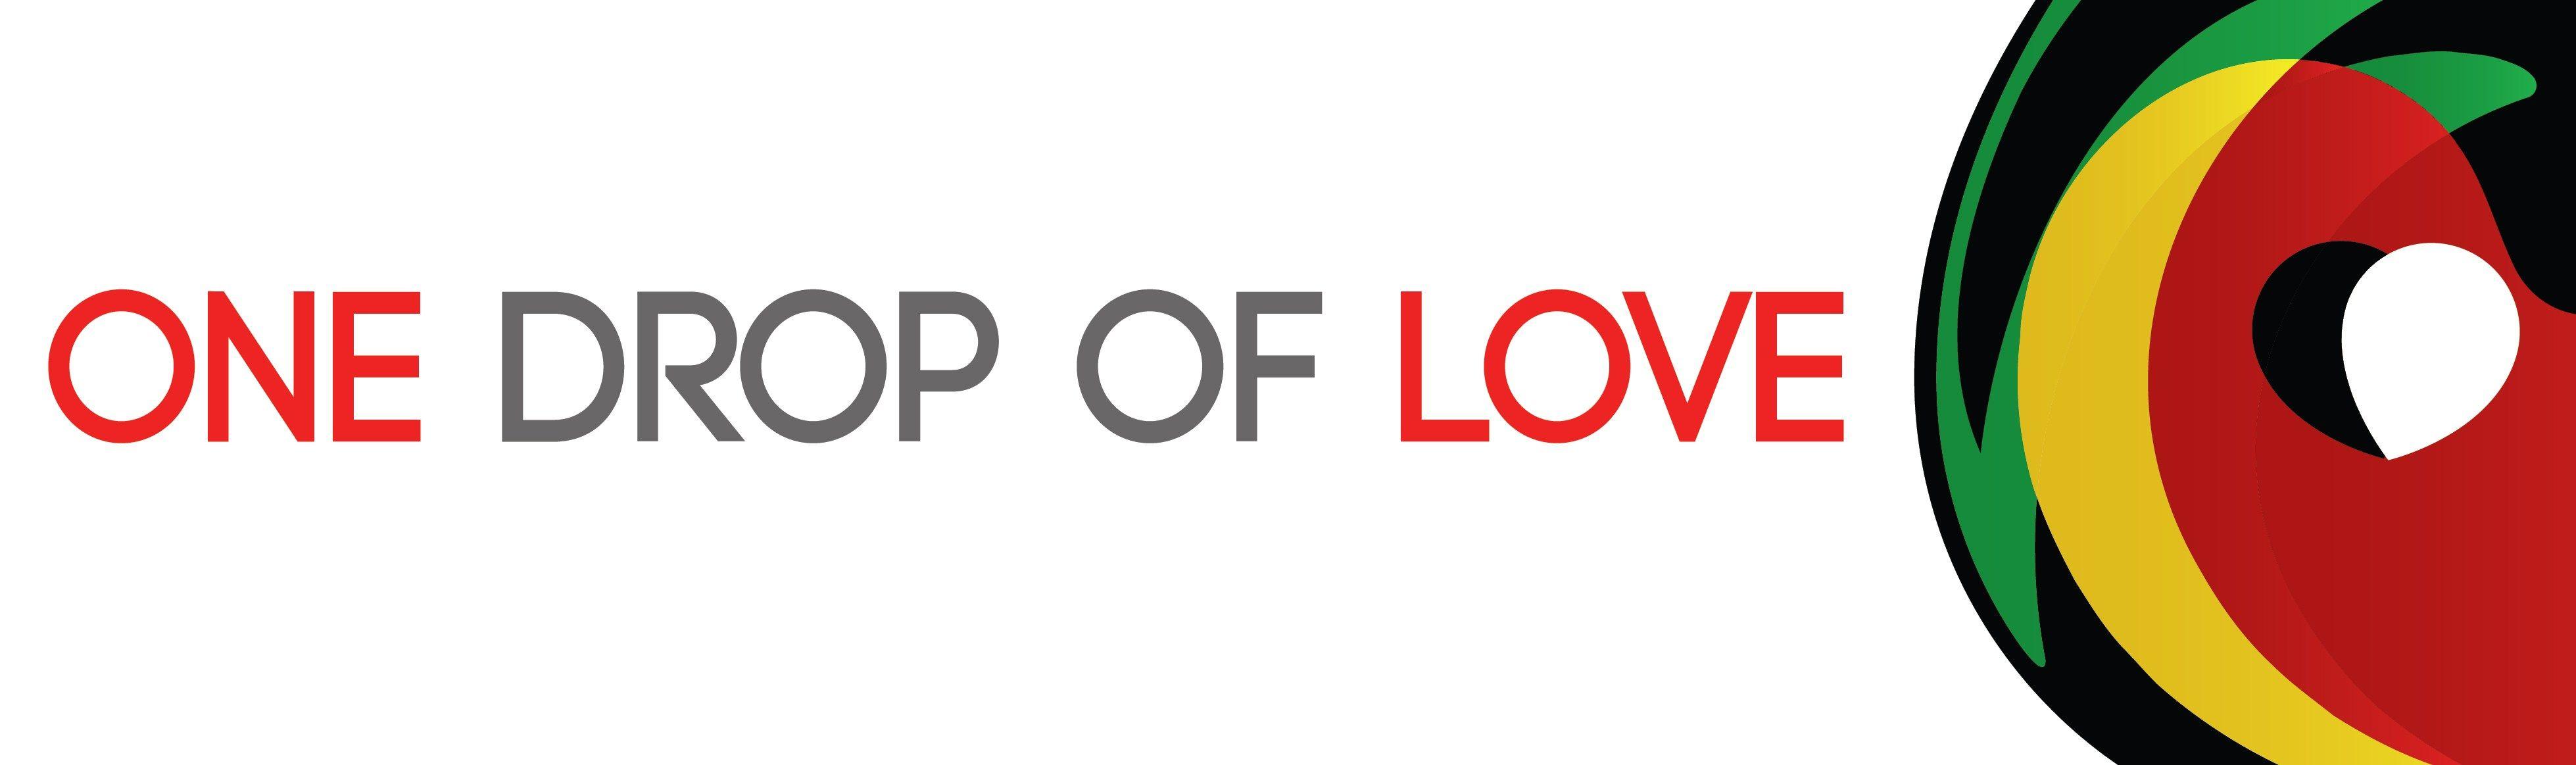 One Drop Logo - One Drop of Love Logo | Zerflin